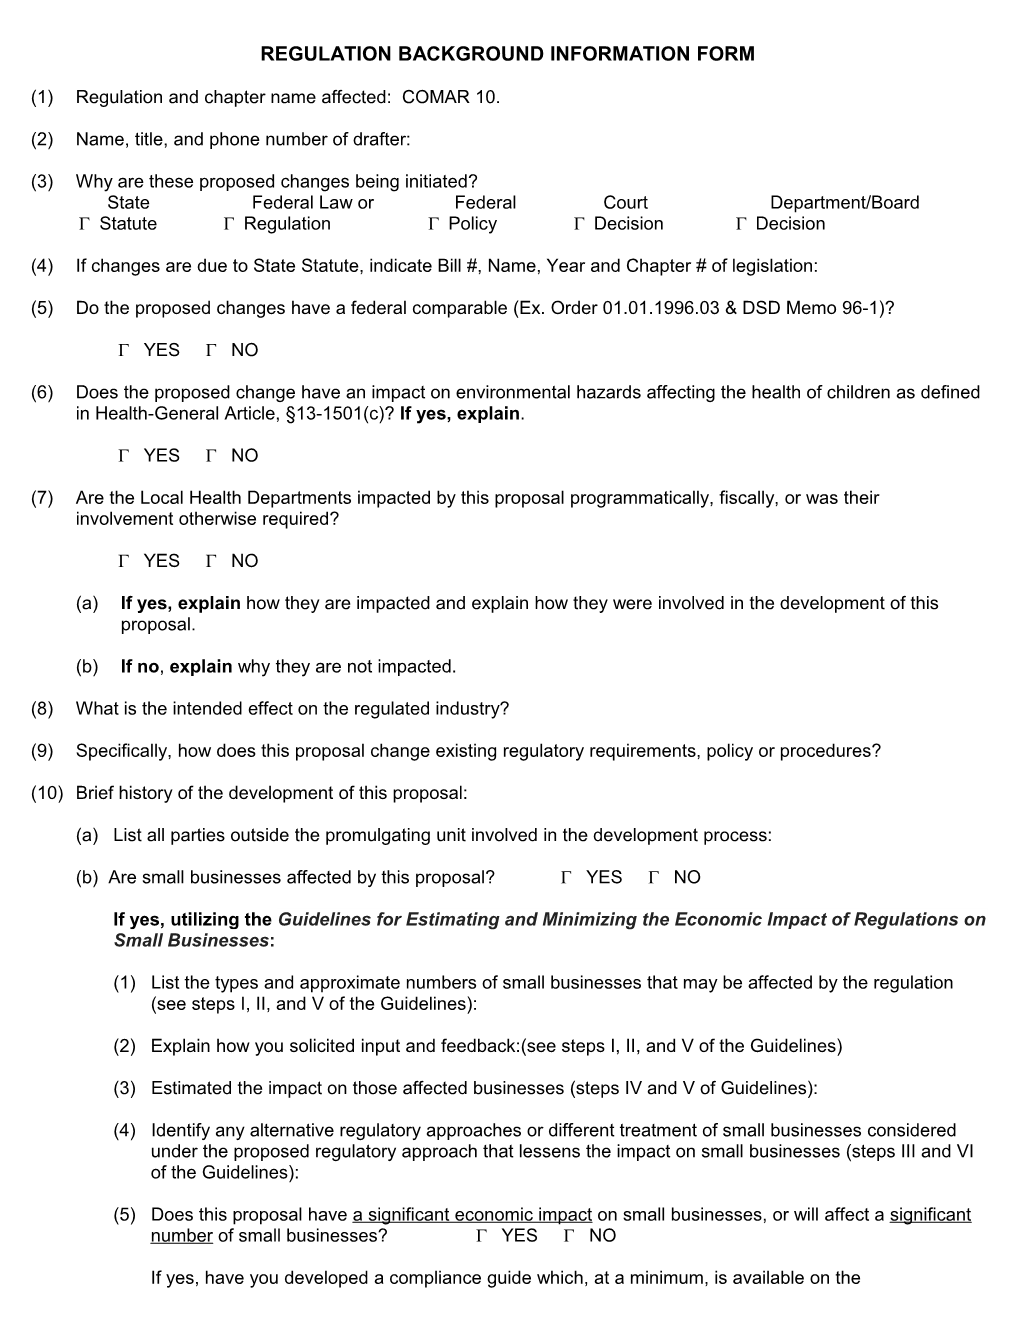 Regulation Background Information Form (Blue Paper)